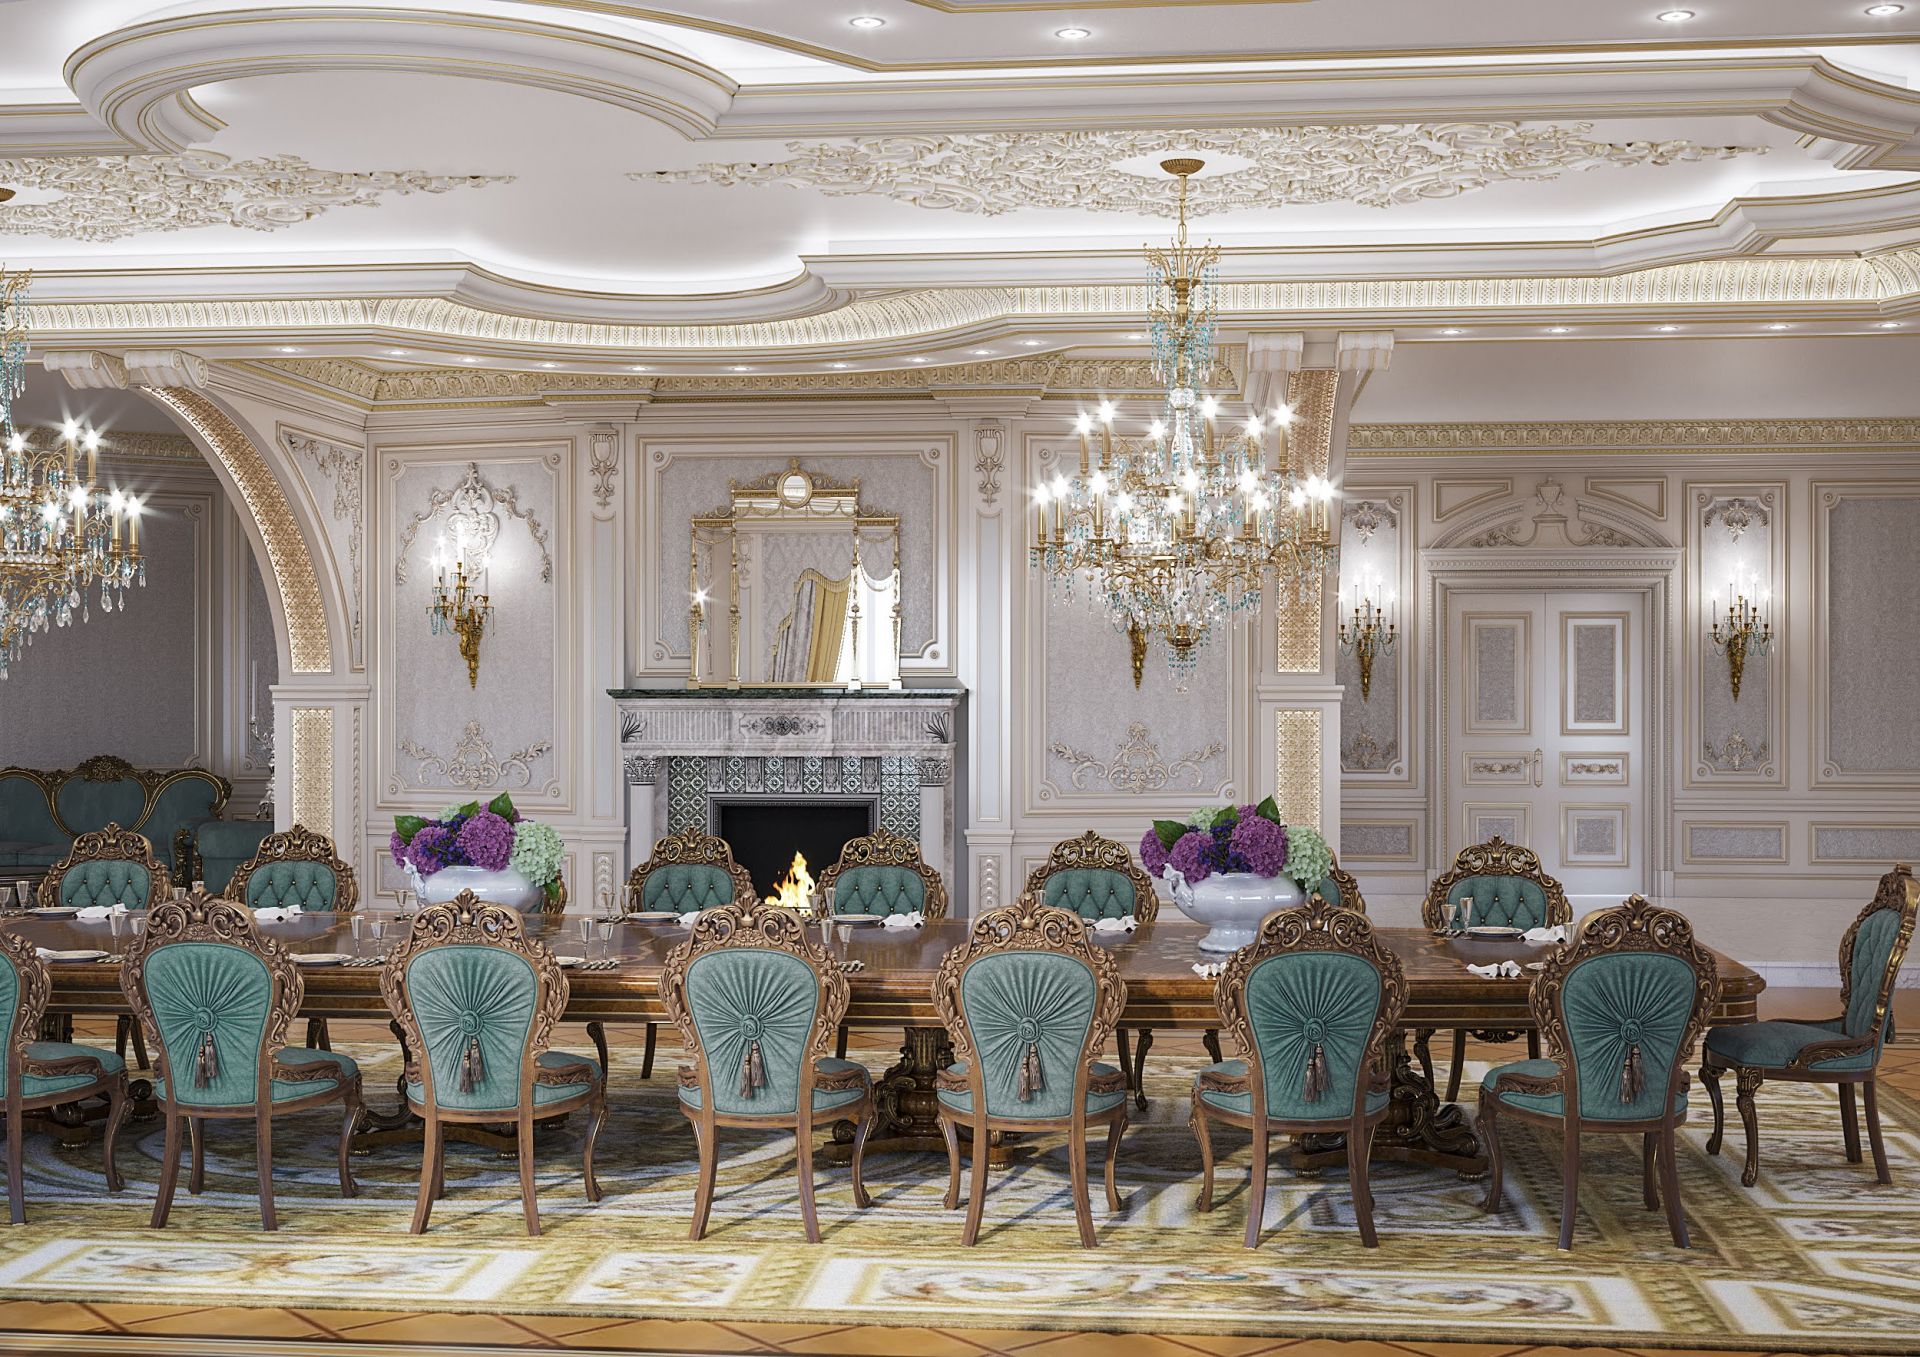 Design, Luxurious banquet hall interior